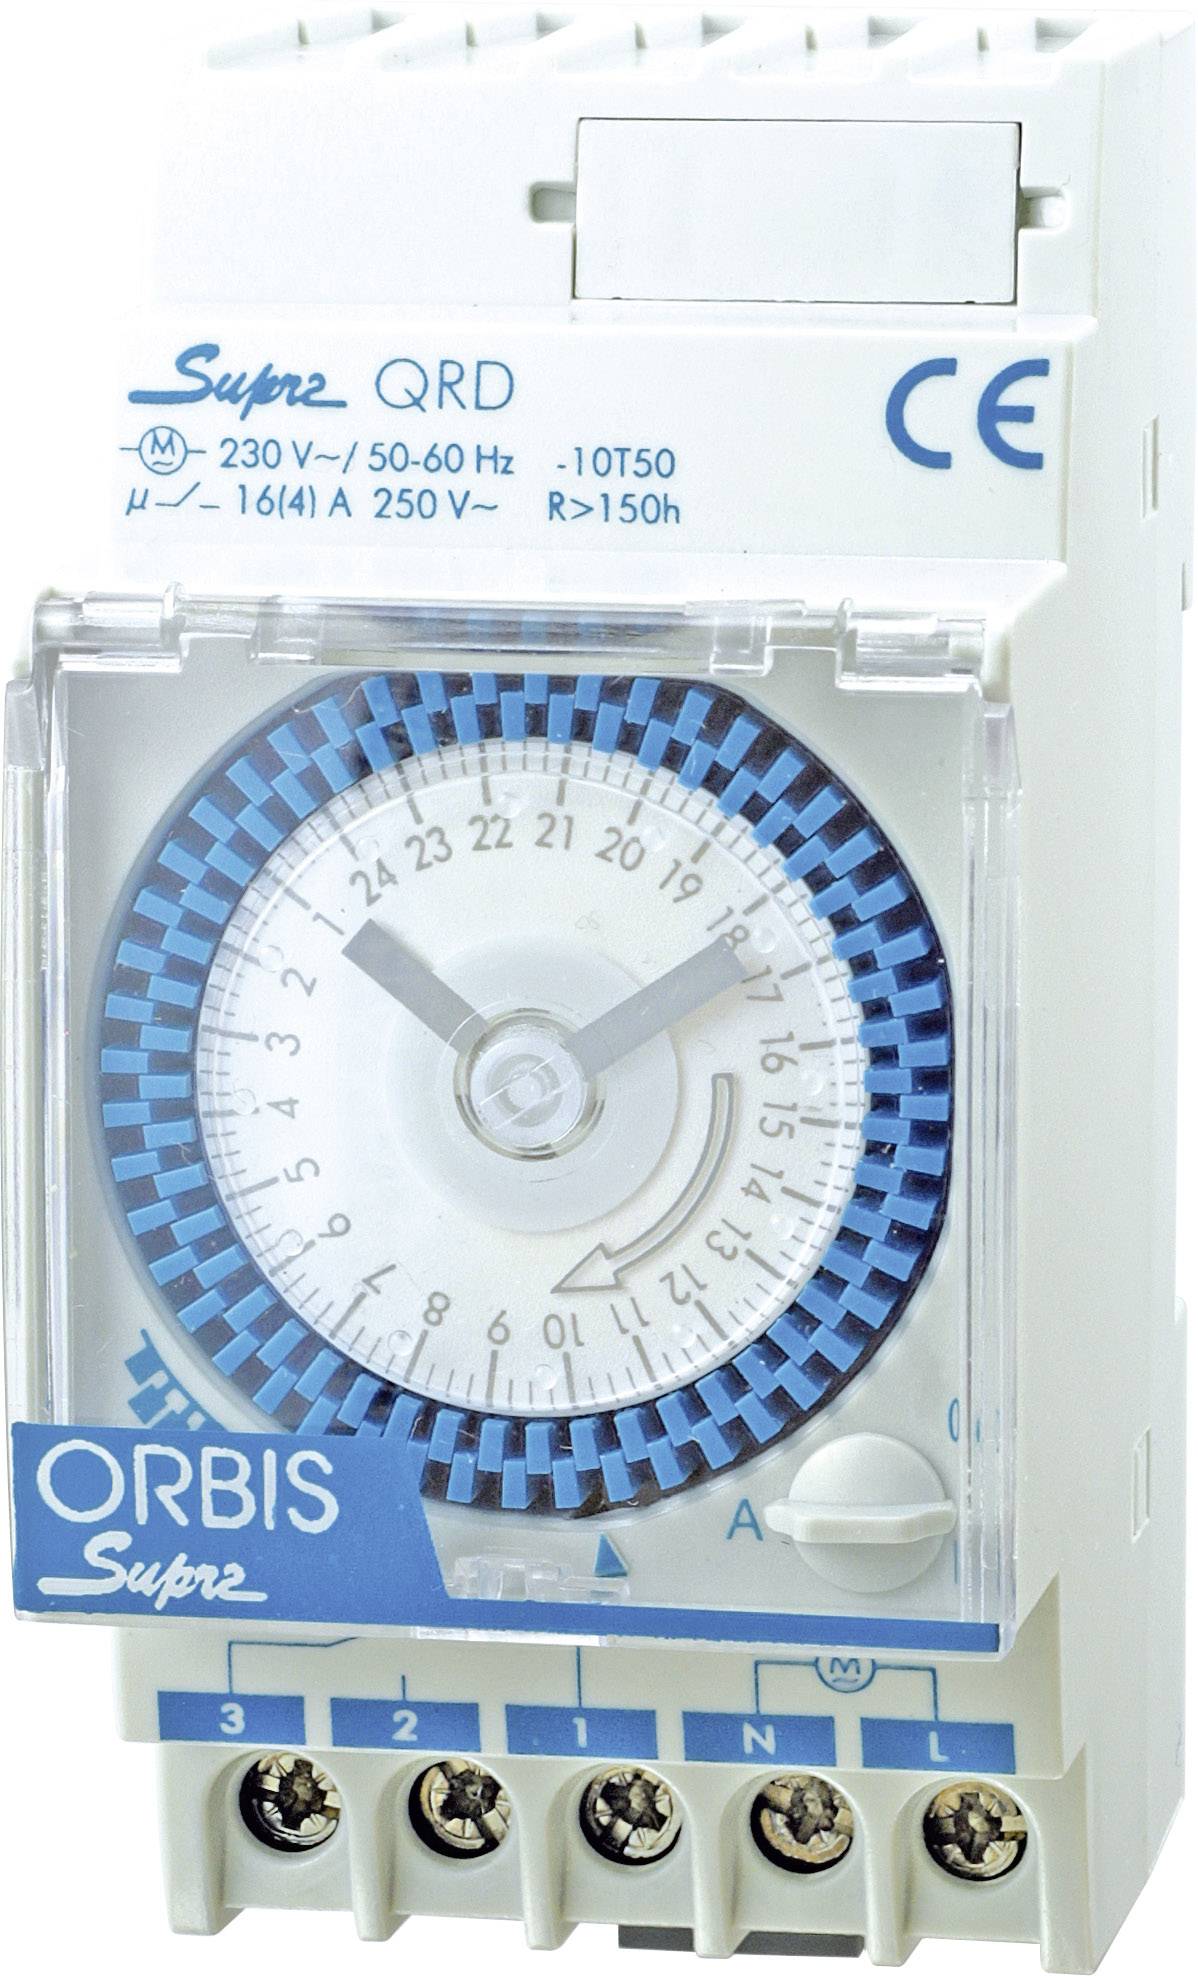 ORBIS ZEITSCHALTTECHNIK SUPRA QRD 230V Hutschienen-Zeitschaltuhr analog 120 V/AC, 230 V/AC, 12